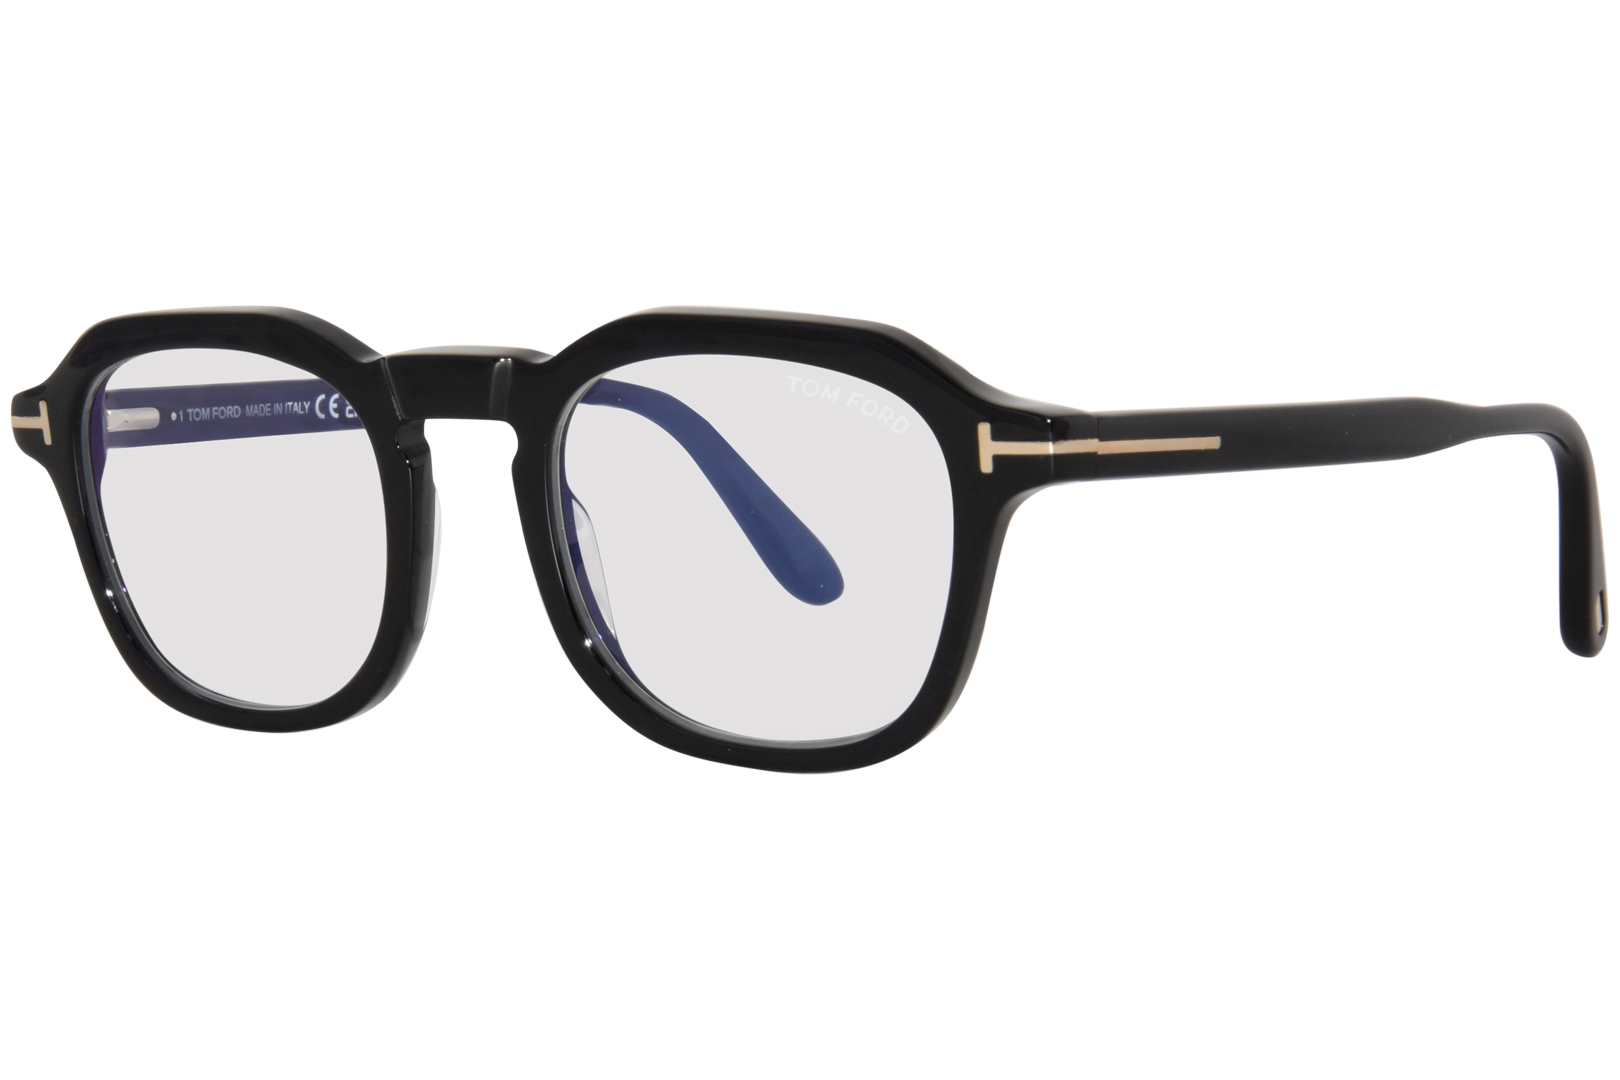 Tom Ford TF5836-B 001 Eyeglasses Men's Shiny Black Full Rim Round Shape ...